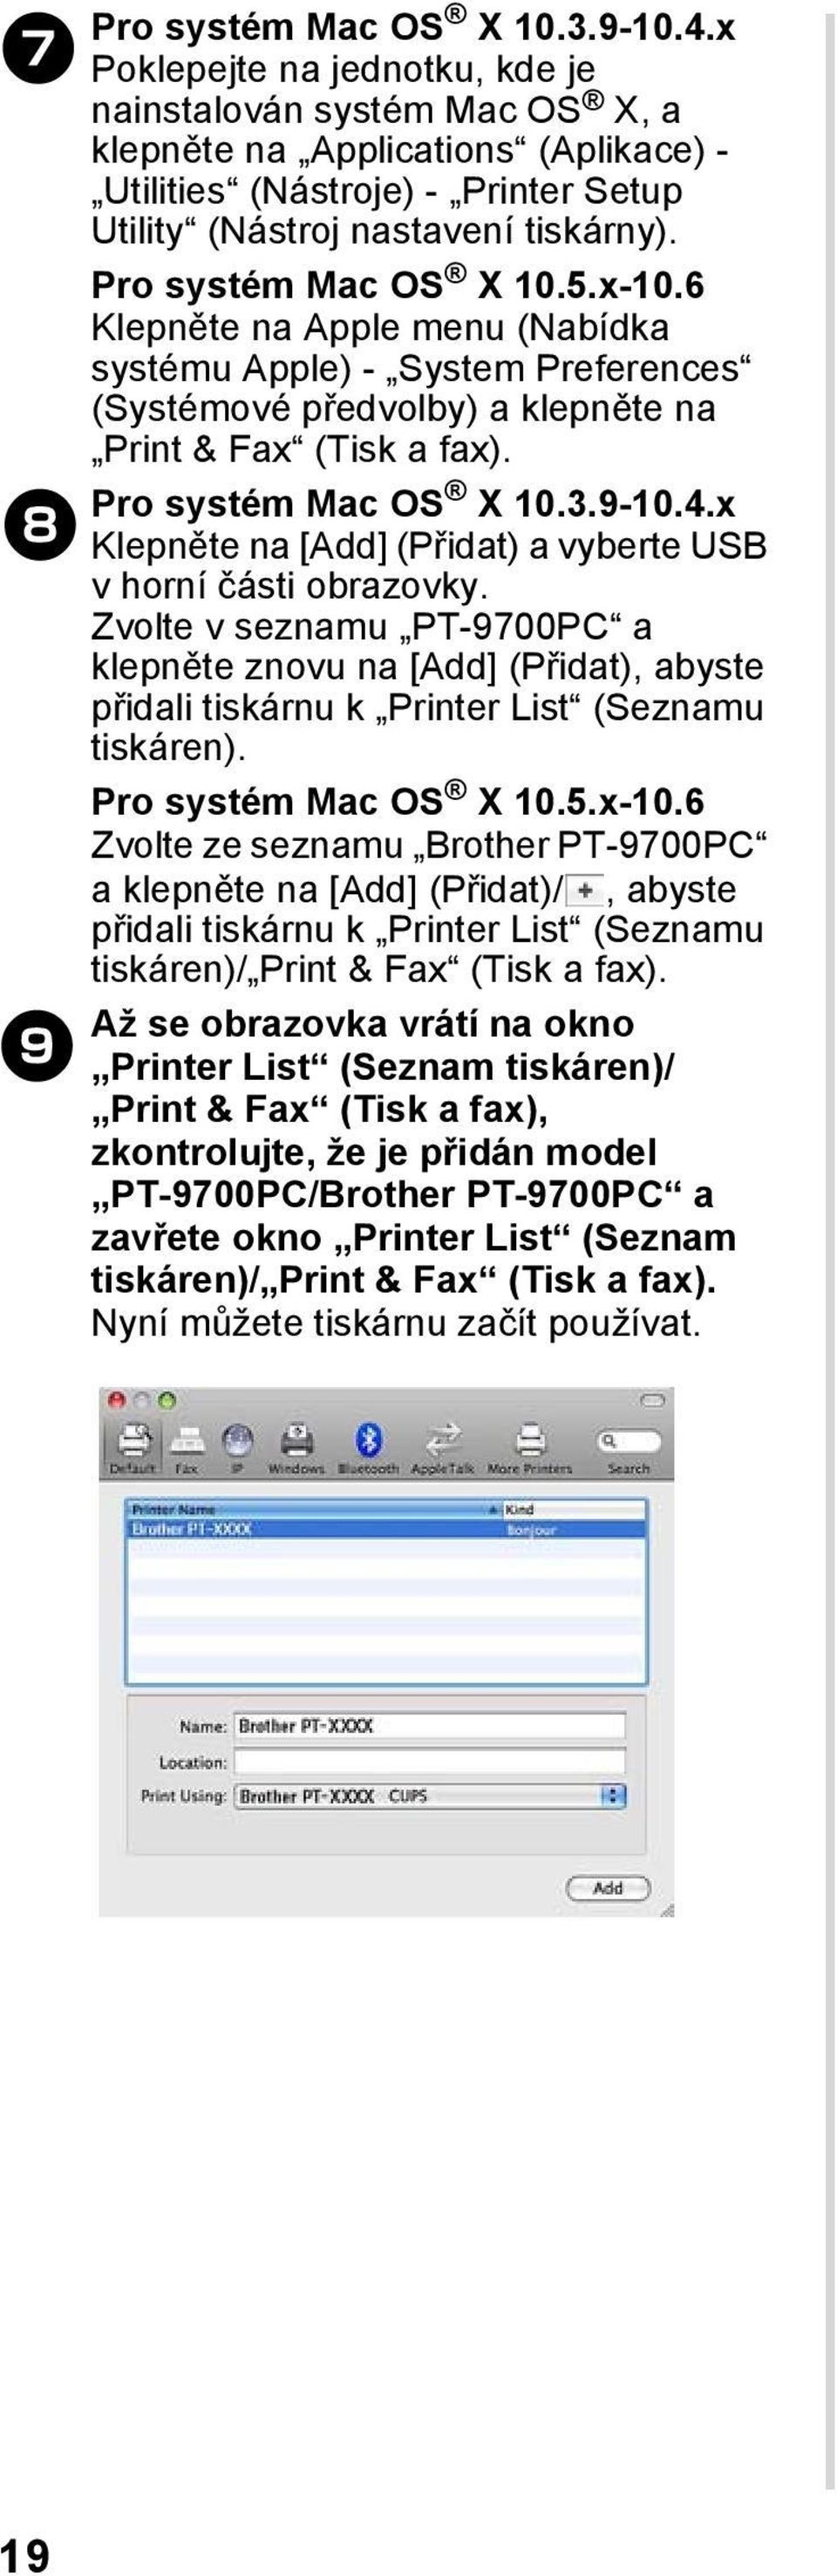 Pro systém Mac OS X 10.5.x-10.6 Klepněte na Apple menu (Nabídka systému Apple) - System Preferences (Systémové předvolby) a klepněte na Print & Fax (Tisk a fax). Pro systém Mac OS X 10.3.9-10.4.